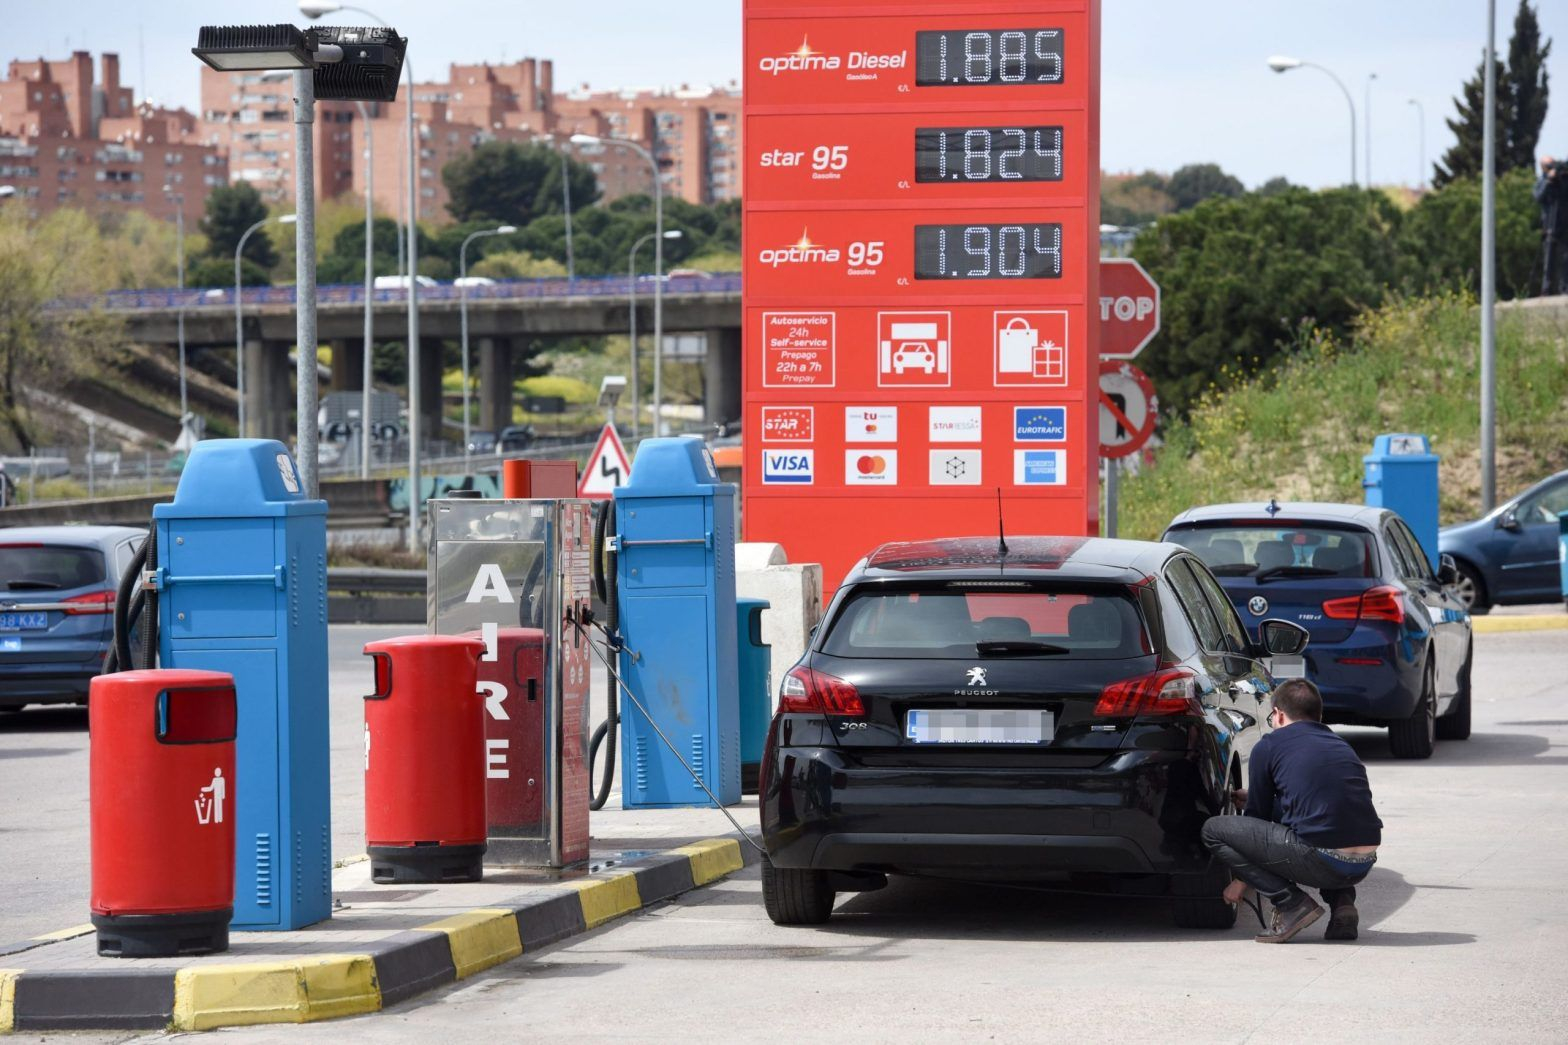 Властите в Румъния мислят за народа, дадоха помощи заради скъпия бензин